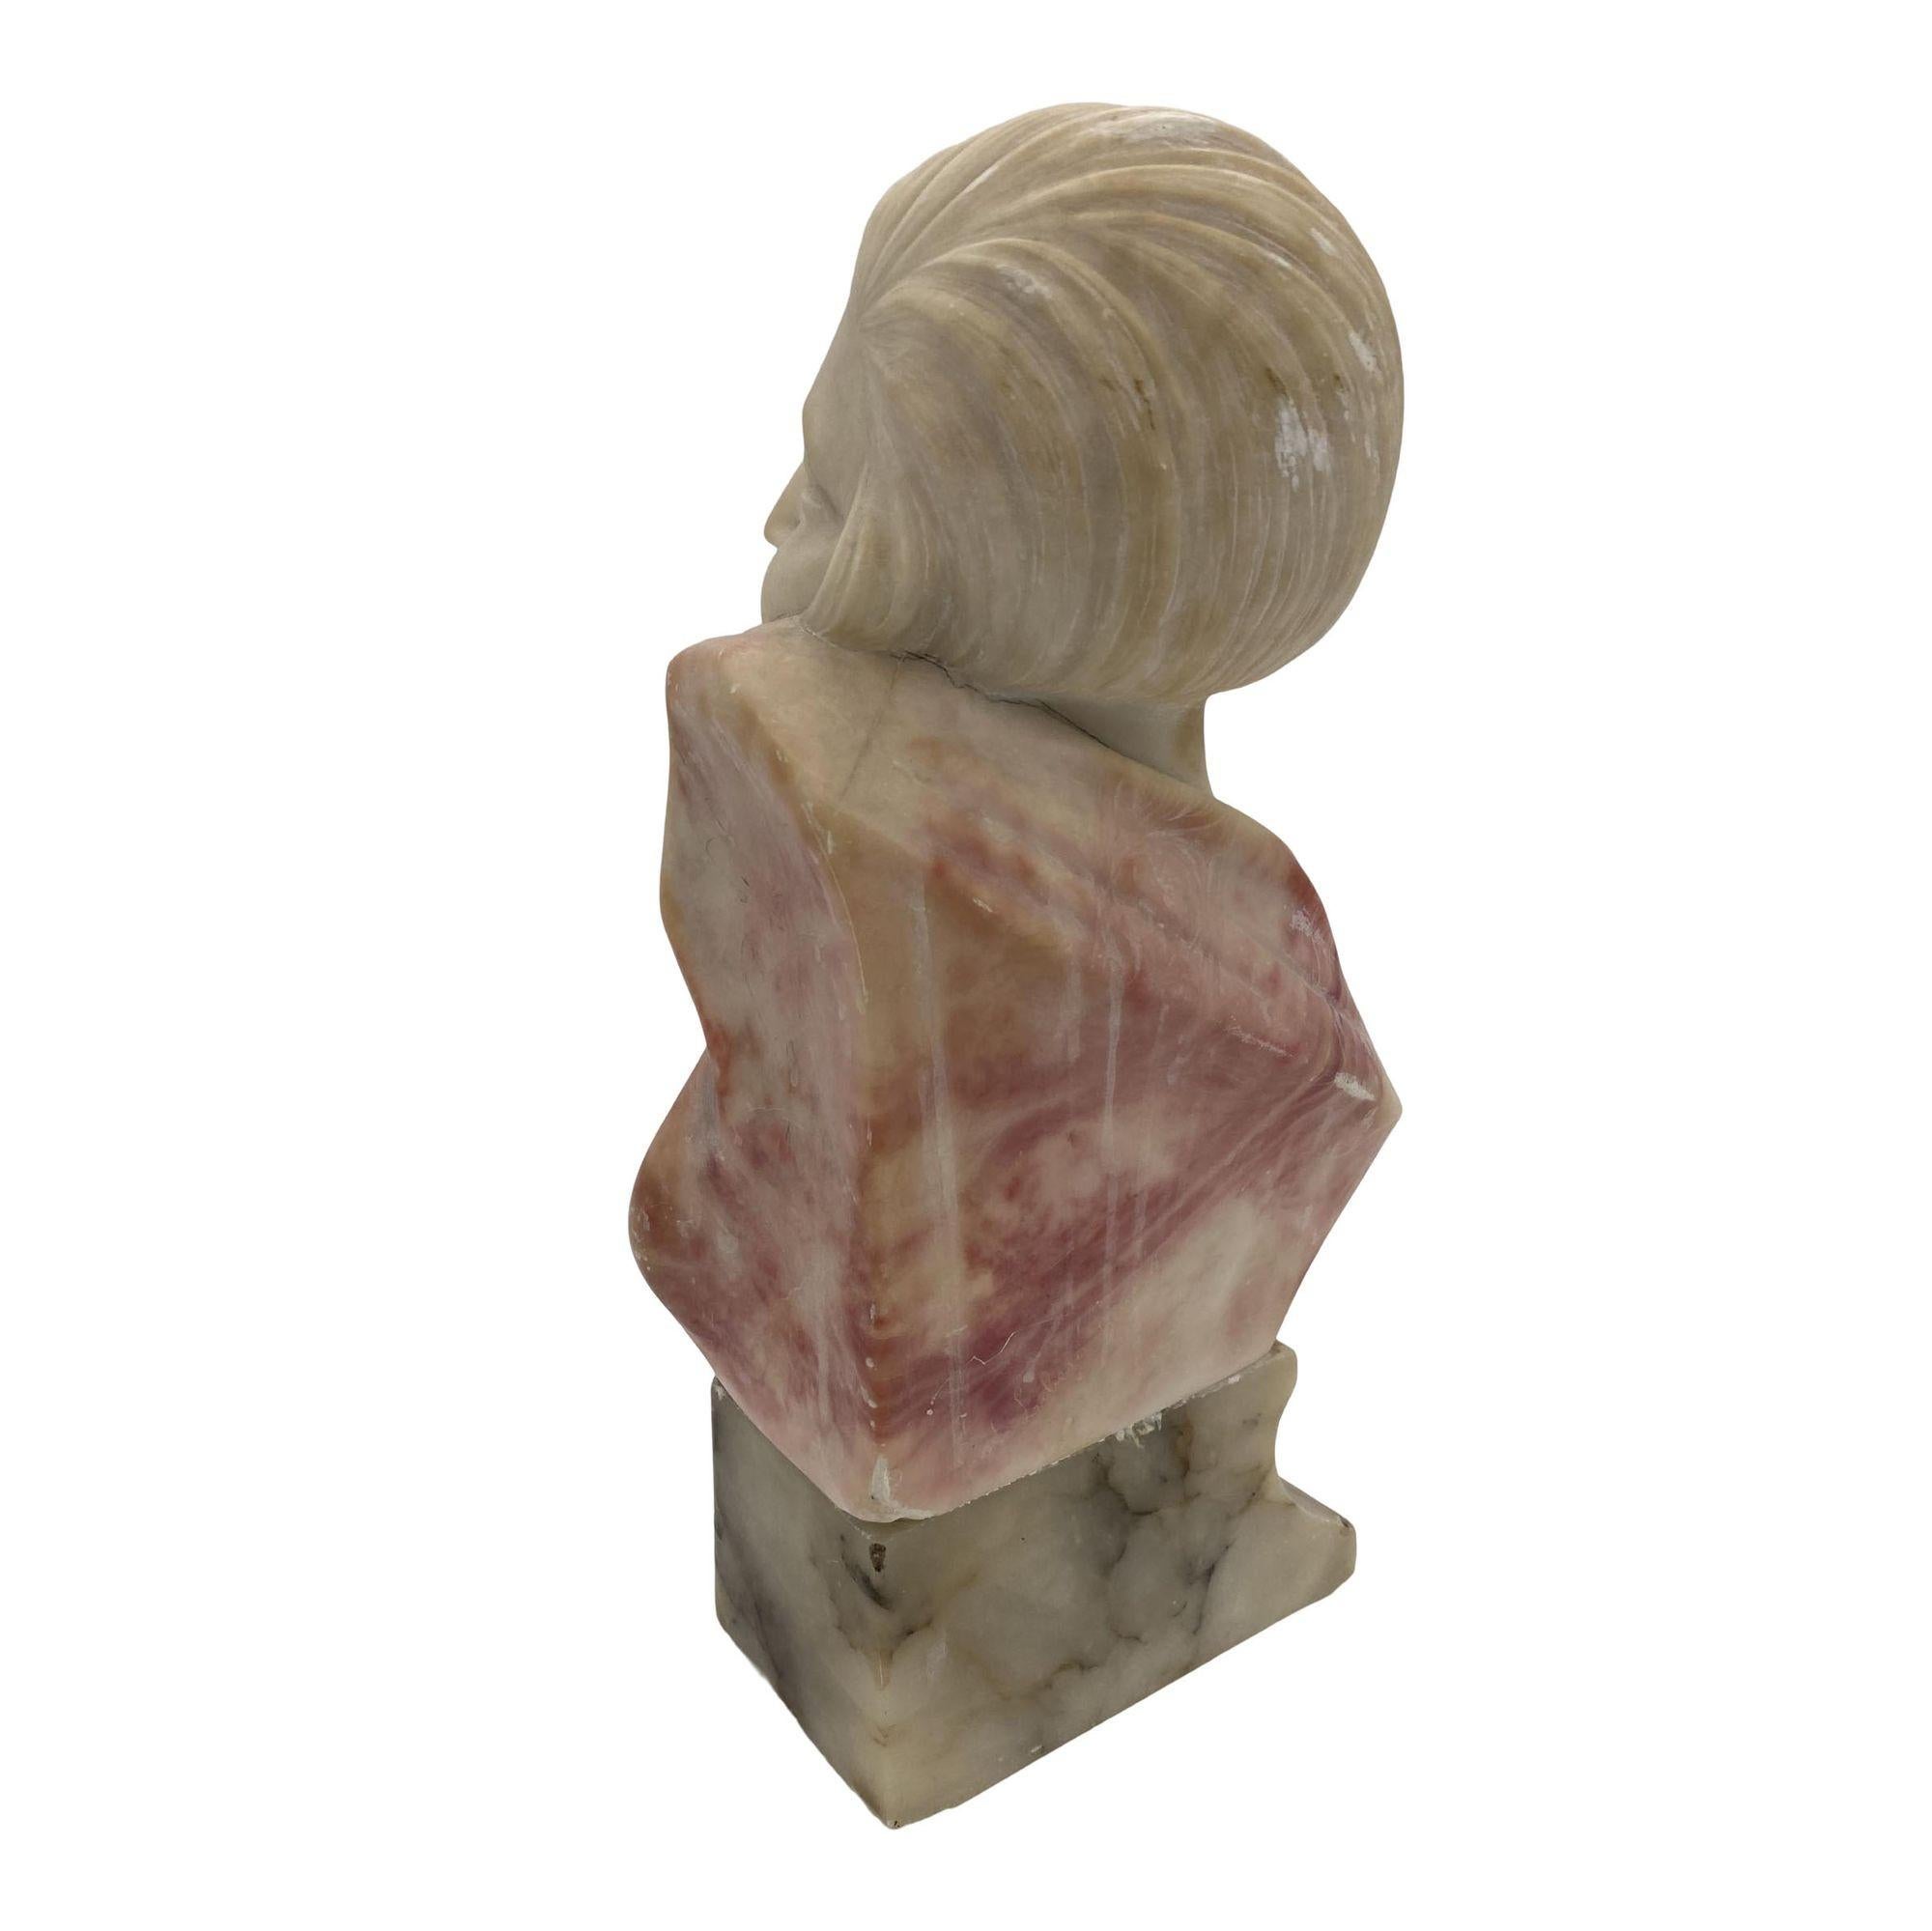 Original handgeschnitzte Art-Deco-Büste einer jungen lächelnden Flapper-Frau. Die aus feinem Alabaster gearbeitete Skulptur hat ein zweifarbiges Aussehen, wobei die Frau in weißem Alabaster und ihre Kleidung in rotem Alabaster geschnitzt ist. Die